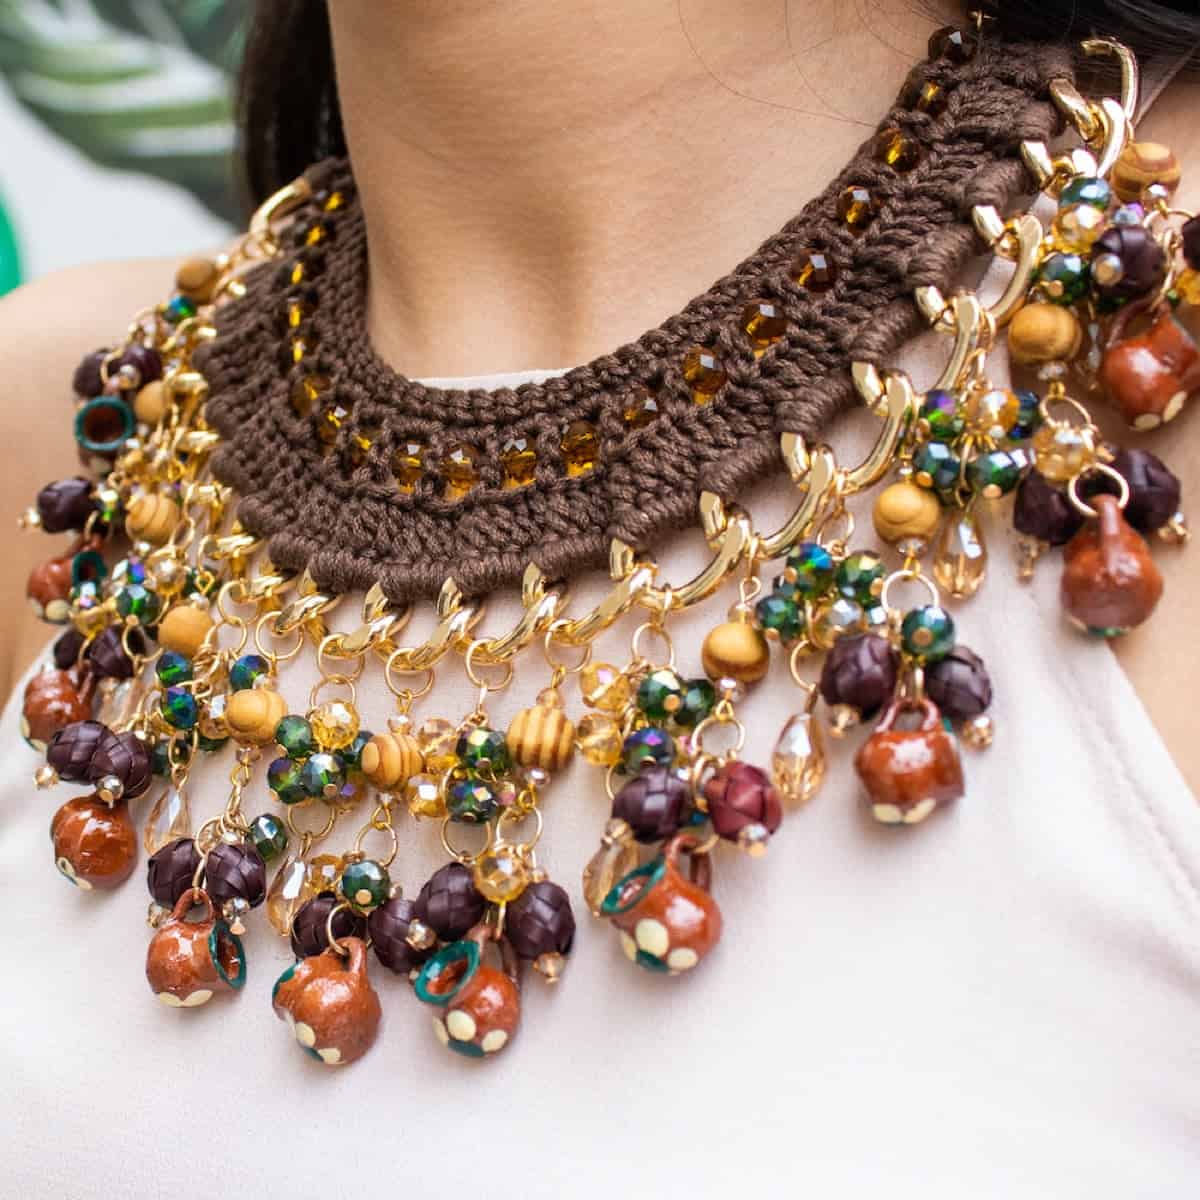 Los 4 elementos de la naturaleza en tu joyería artesanal mexicana